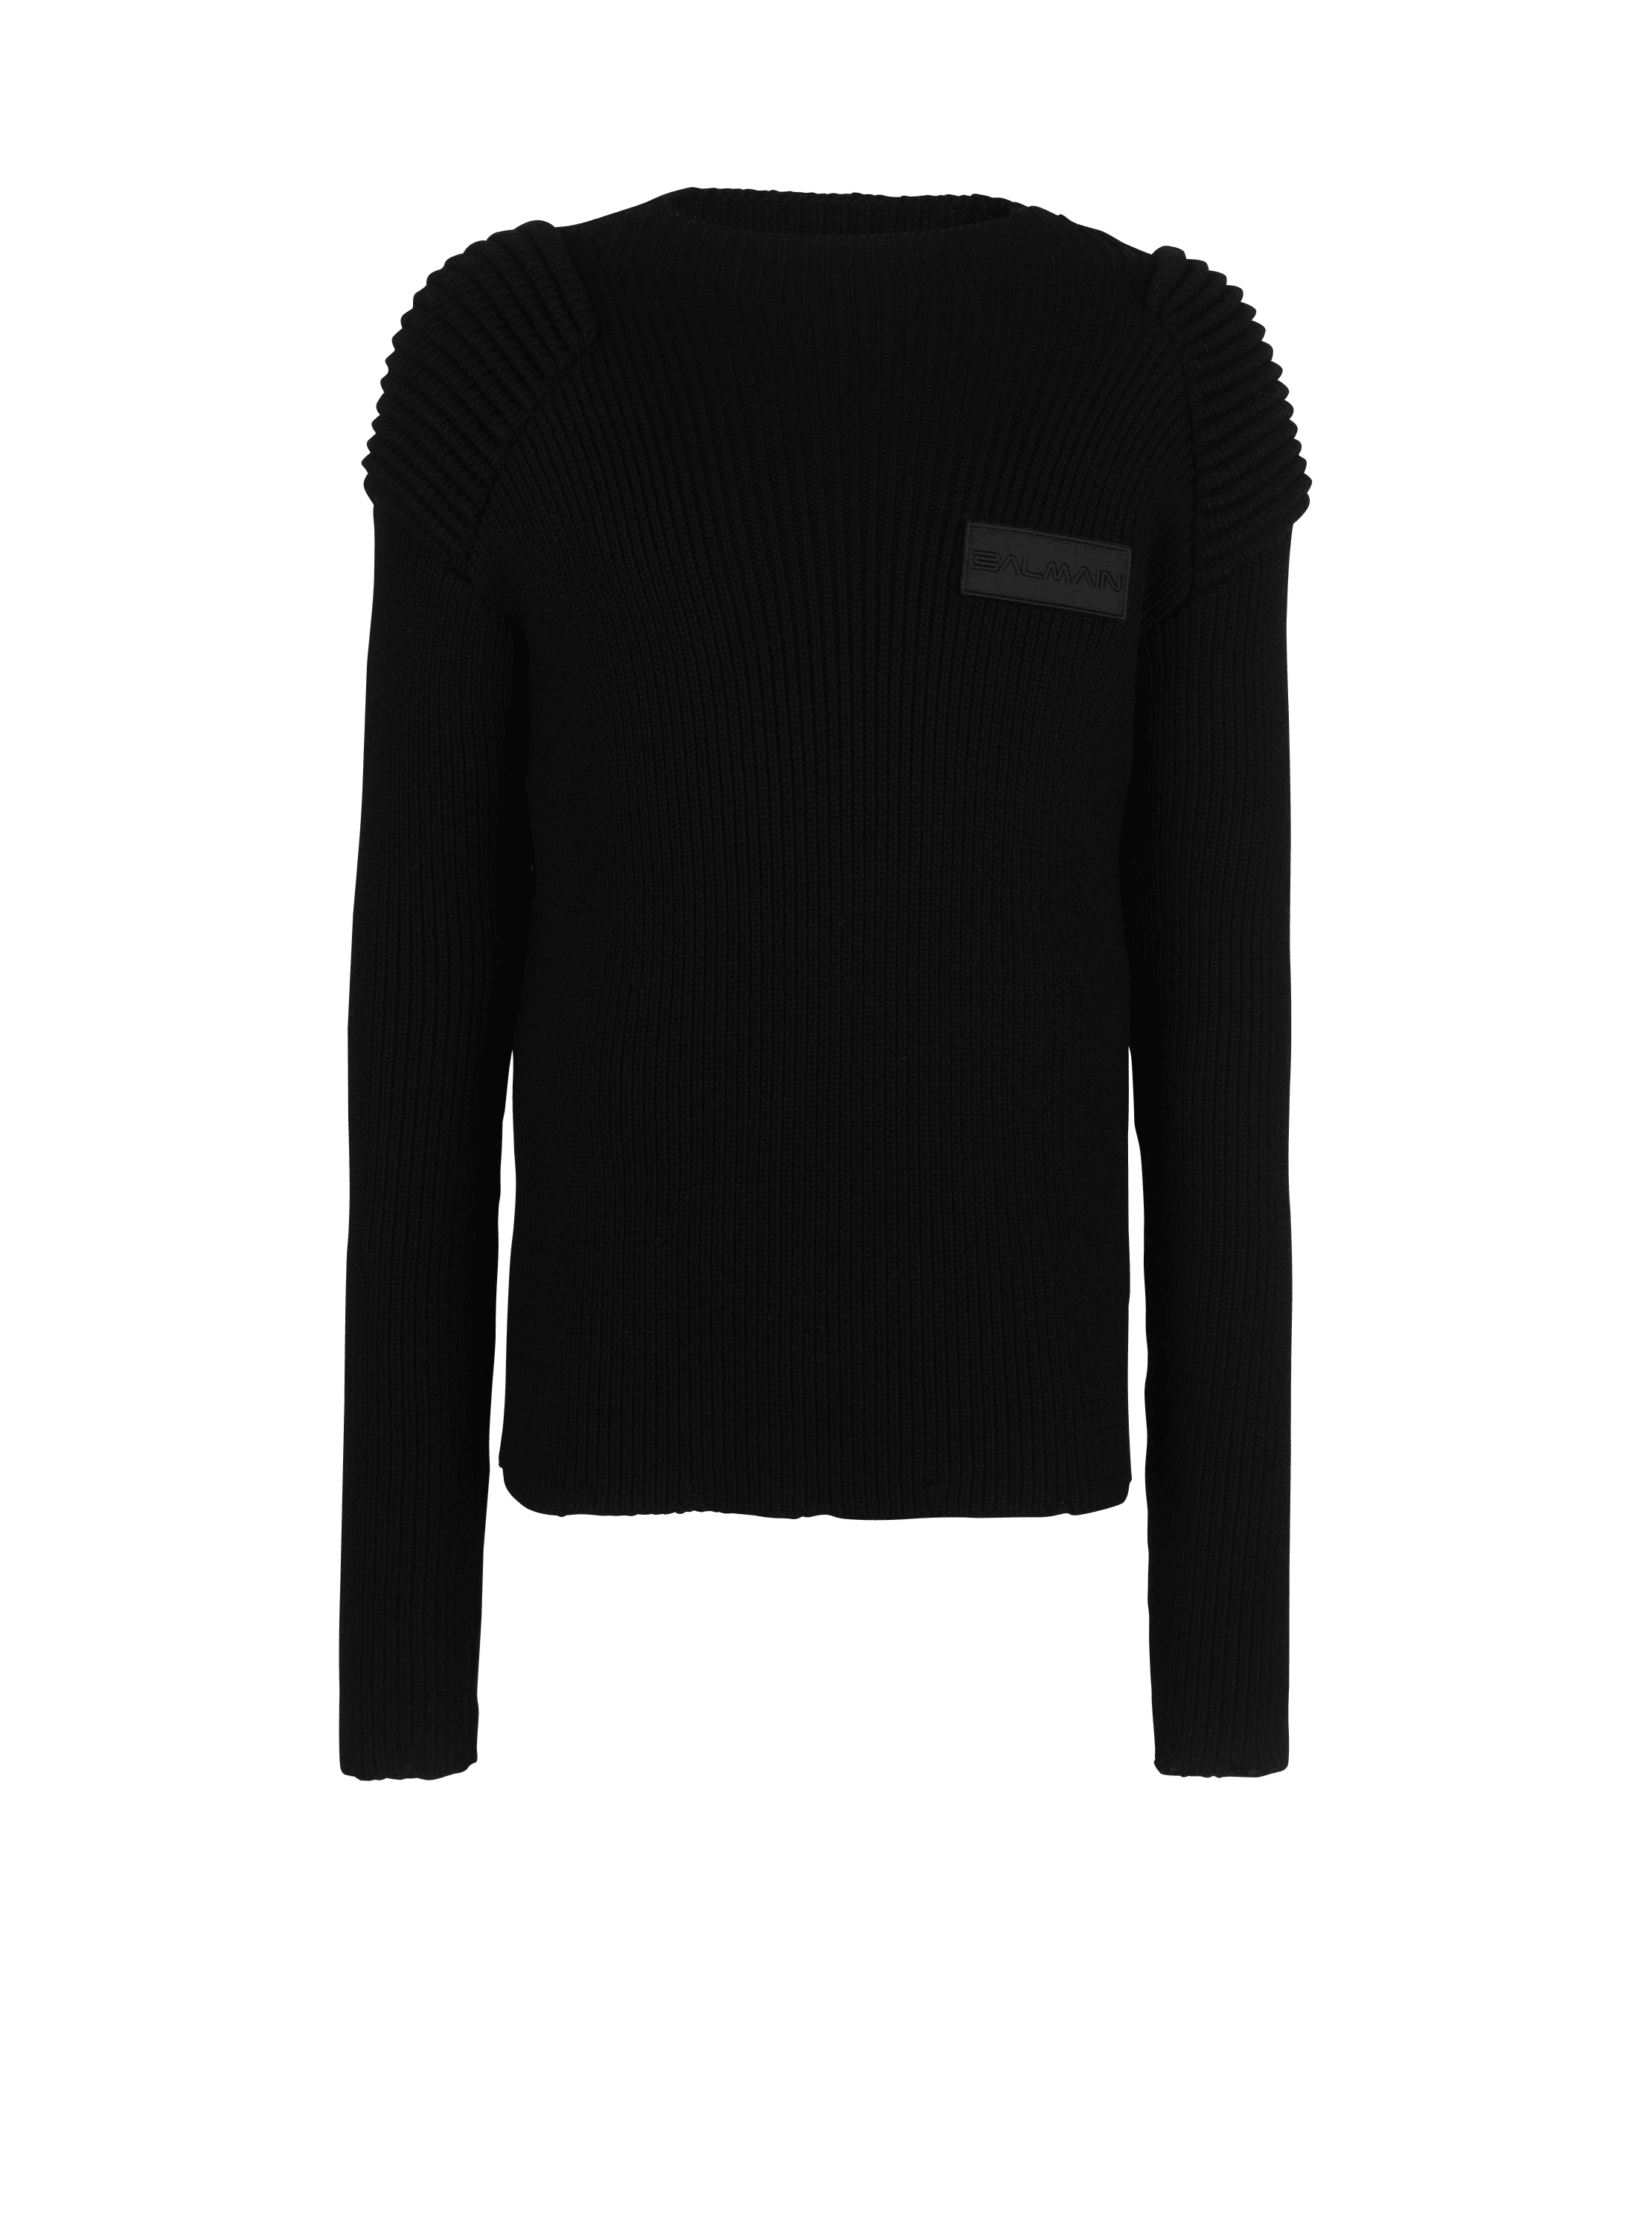 Pullover in lana con logo Balmain